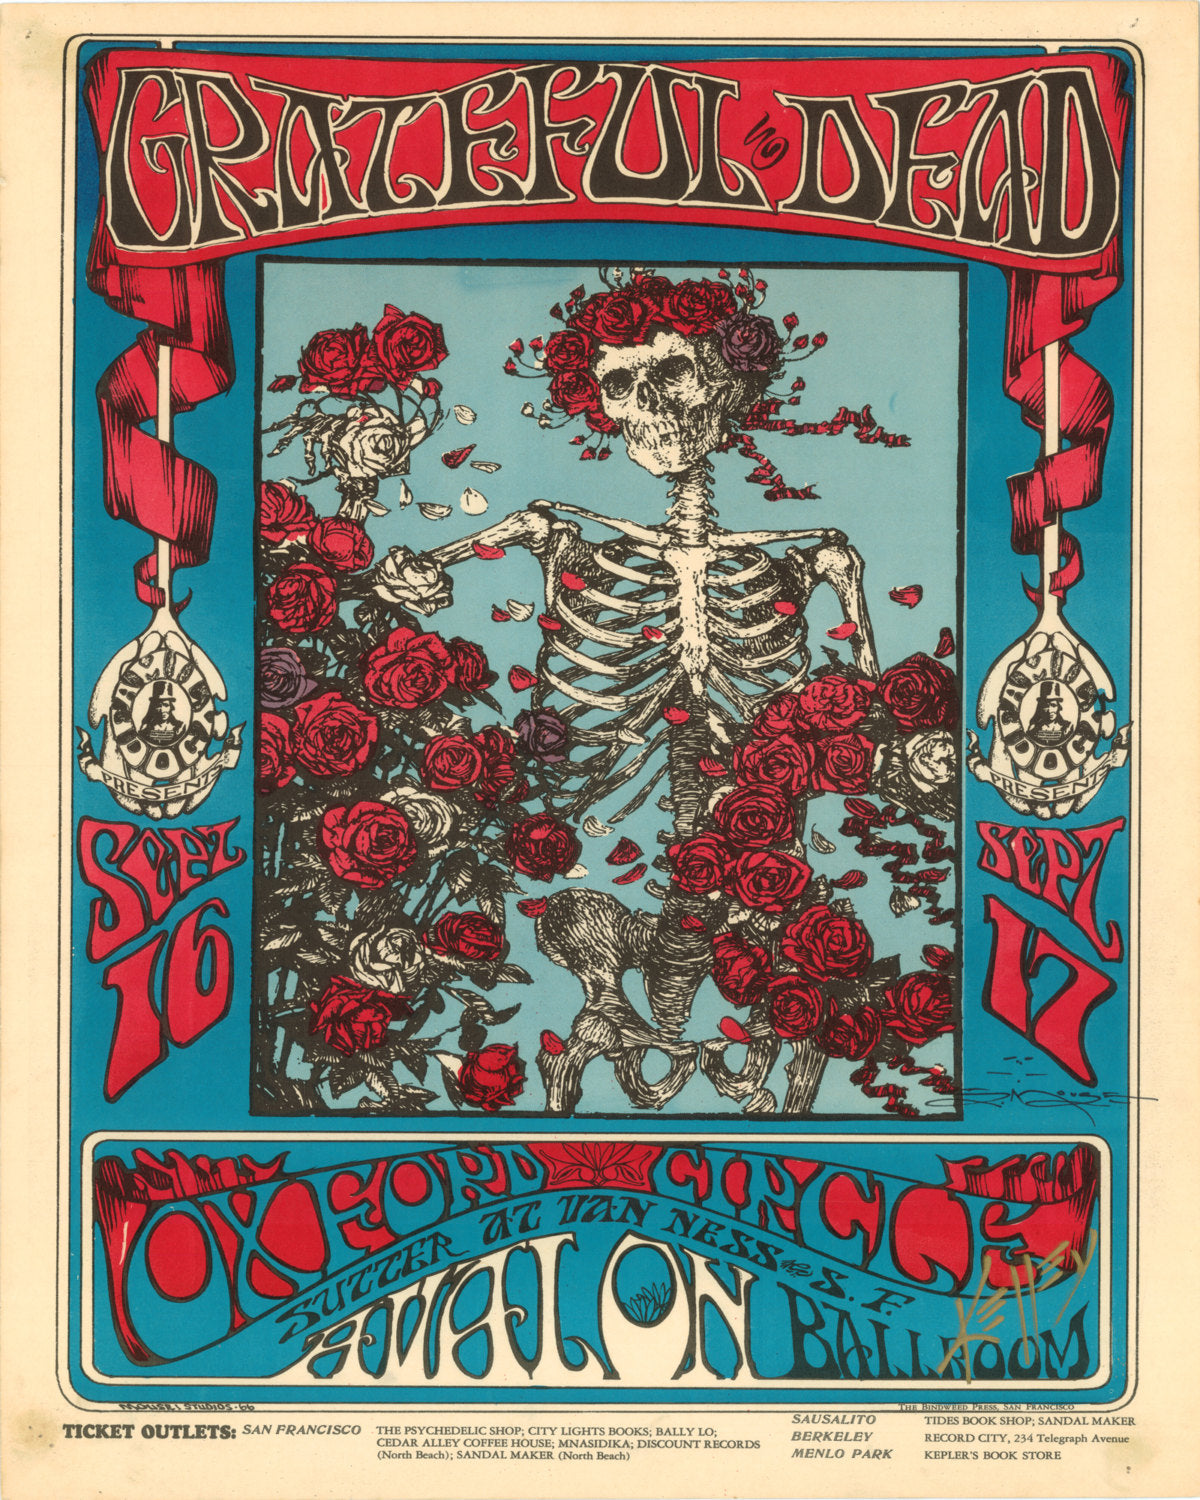 Vintage Music Art Poster - Grateful Dead   0310